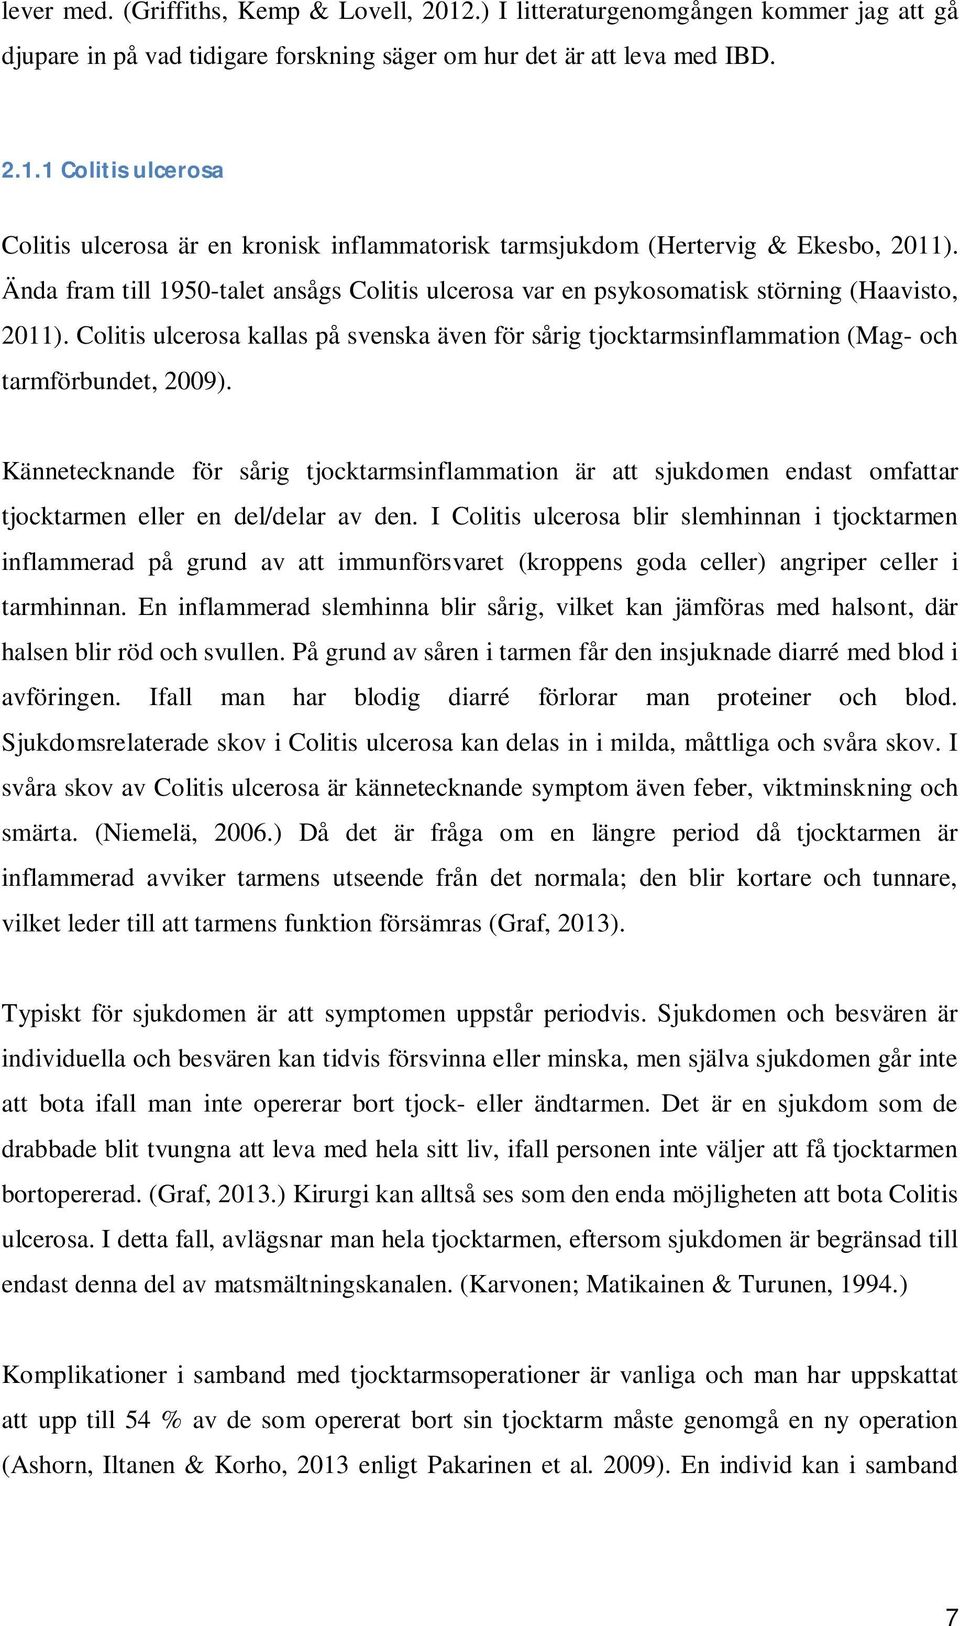 Colitis ulcerosa kallas på svenska även för sårig tjocktarmsinflammation (Mag- och tarmförbundet, 2009).